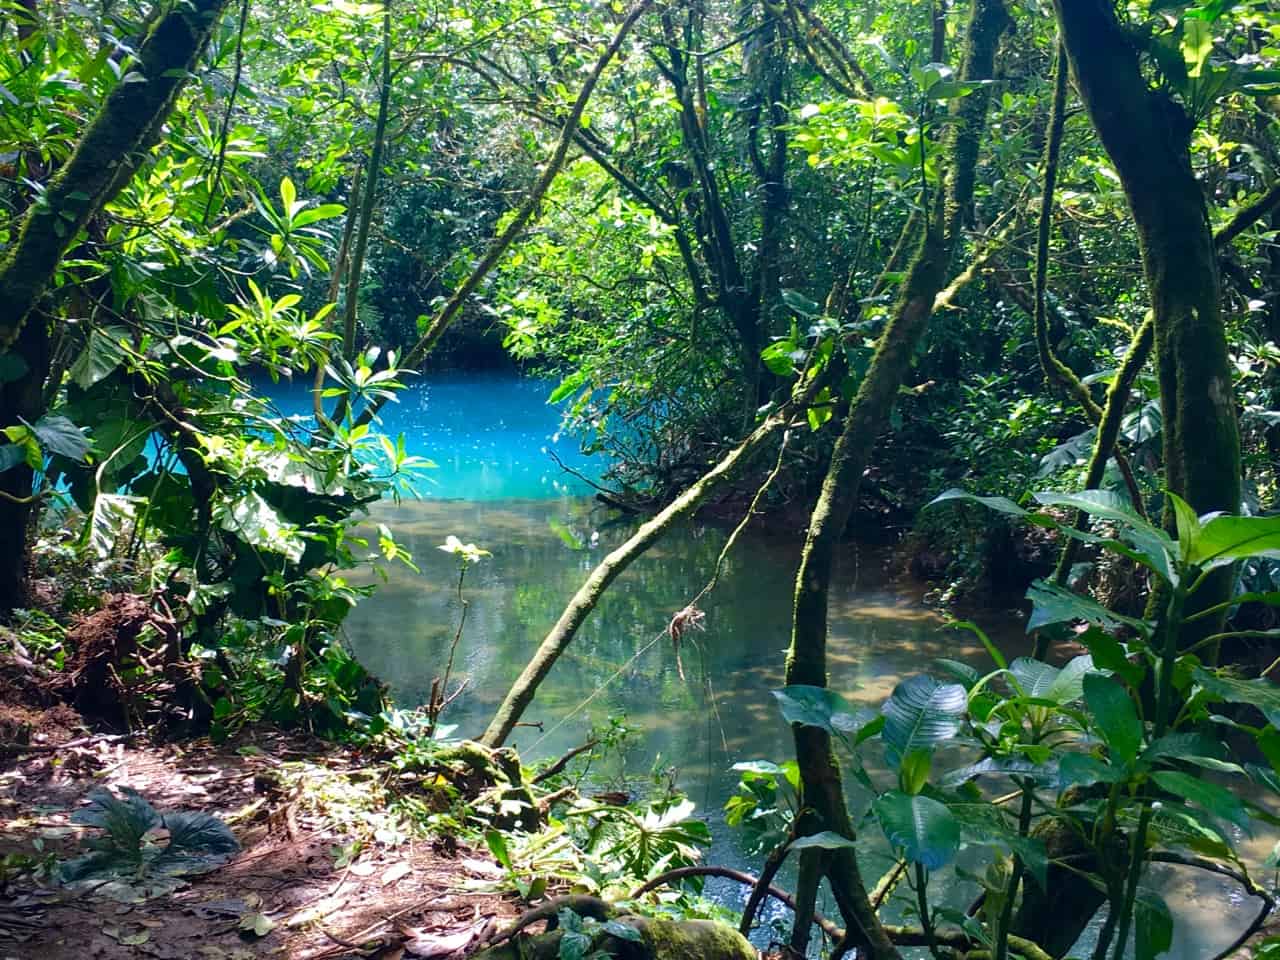 Los Teñidores w Kostaryce, gdzie spotykają się dwie czyste rzeki, a jedna zmienia kolor na niebieski.